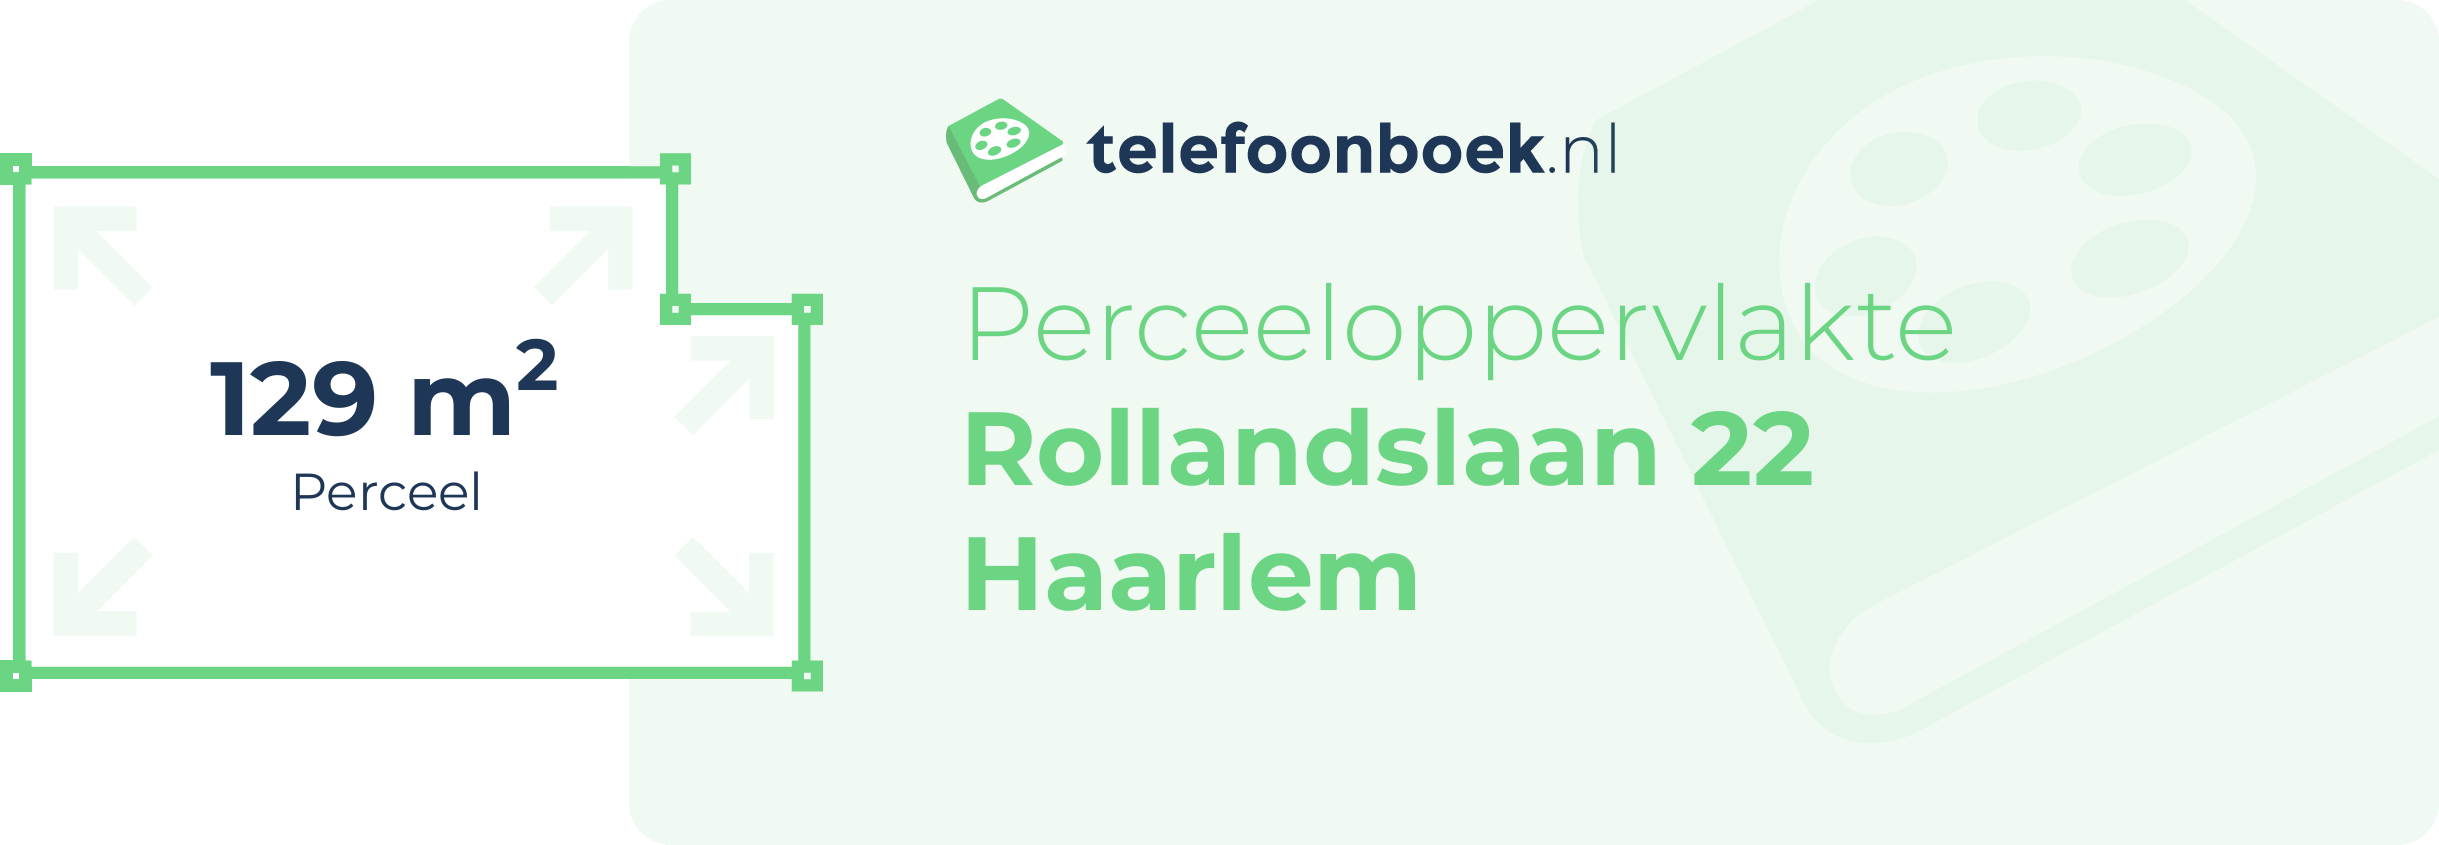 Perceeloppervlakte Rollandslaan 22 Haarlem